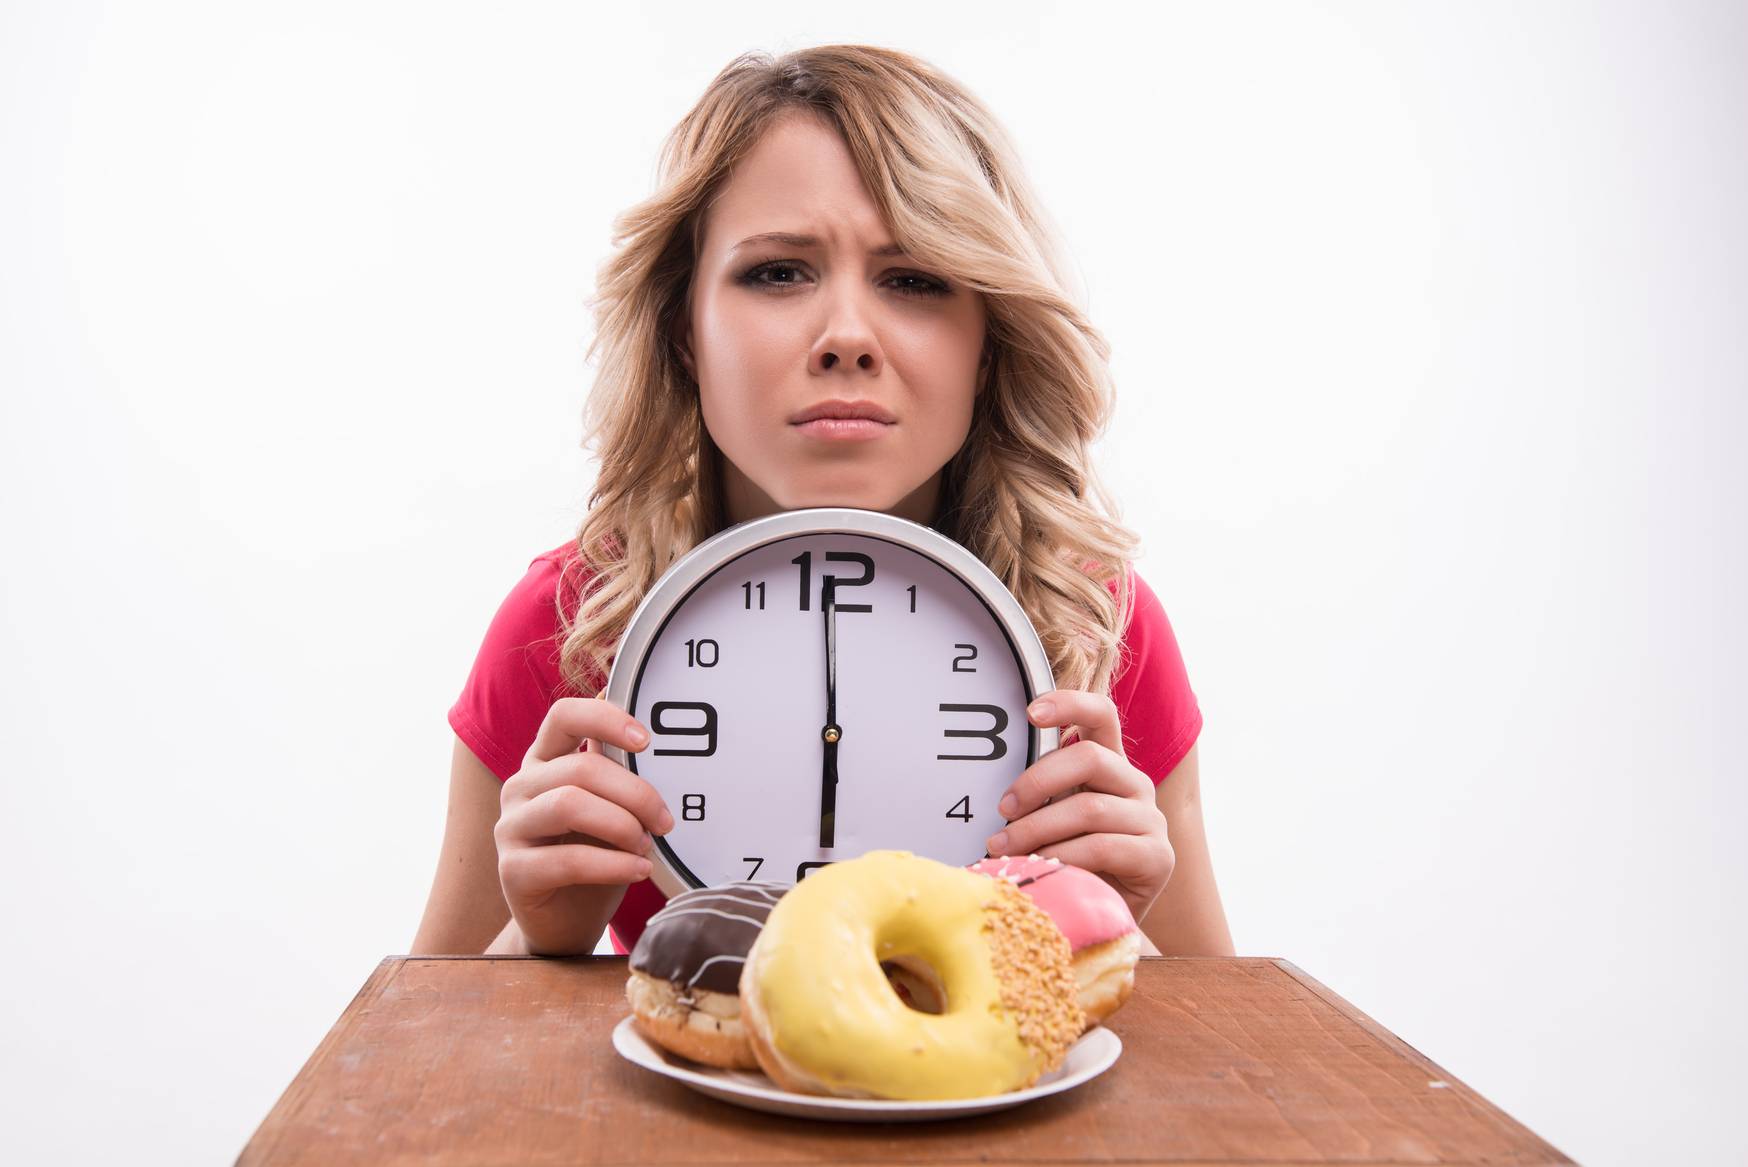 Если не есть после 6 на сколько можно похудеть за месяц - реально ли сбросить вес за неделю, если не кушать после шести